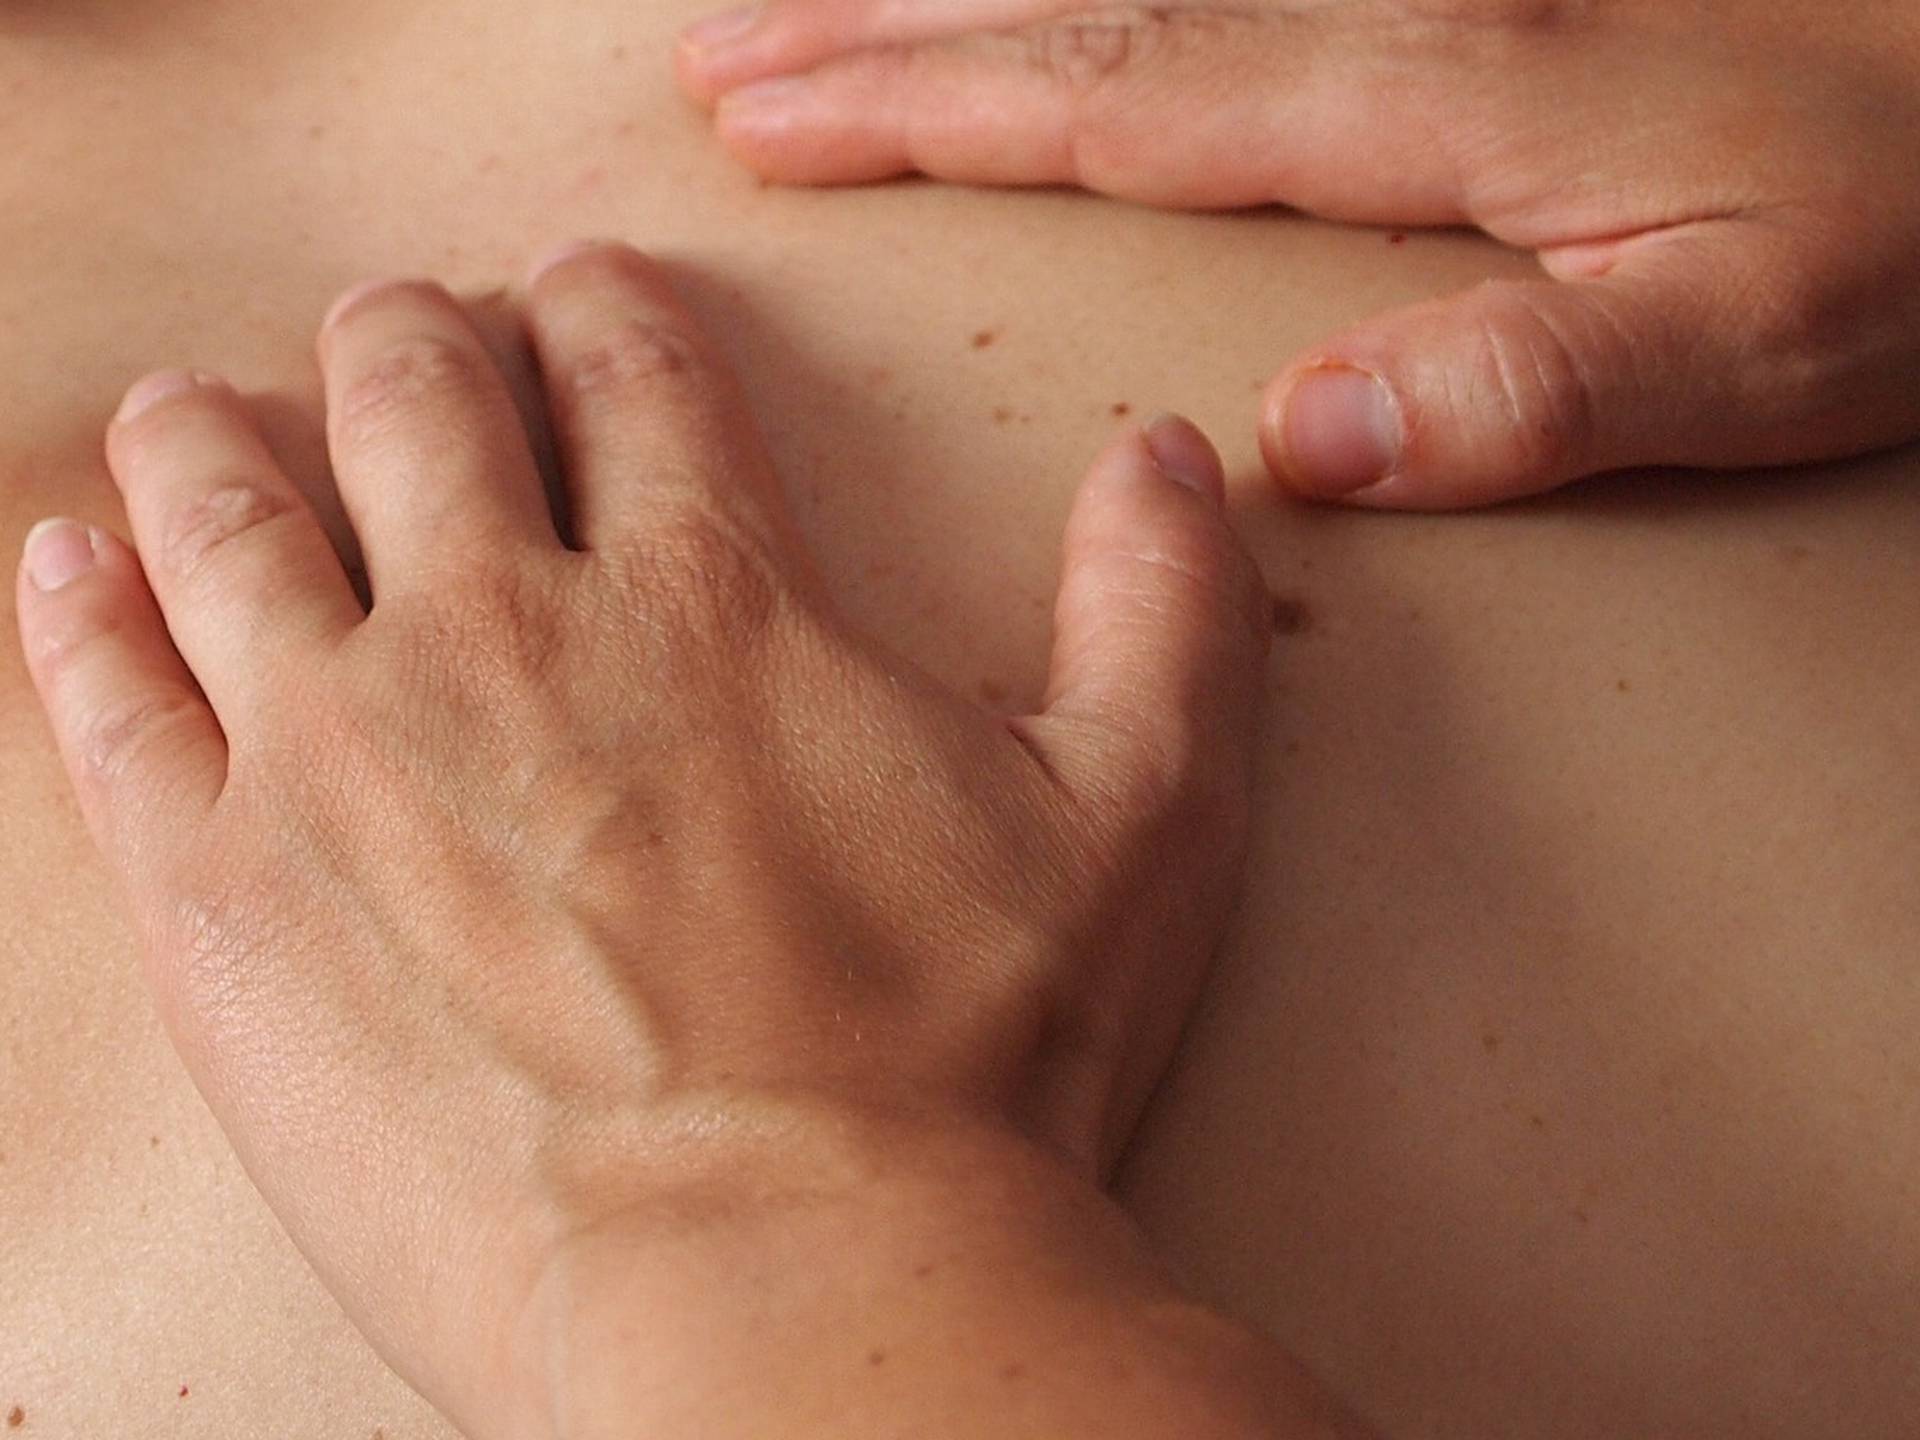 Koje vrste masaže postoje, za što pomažu i koliko dugo traju